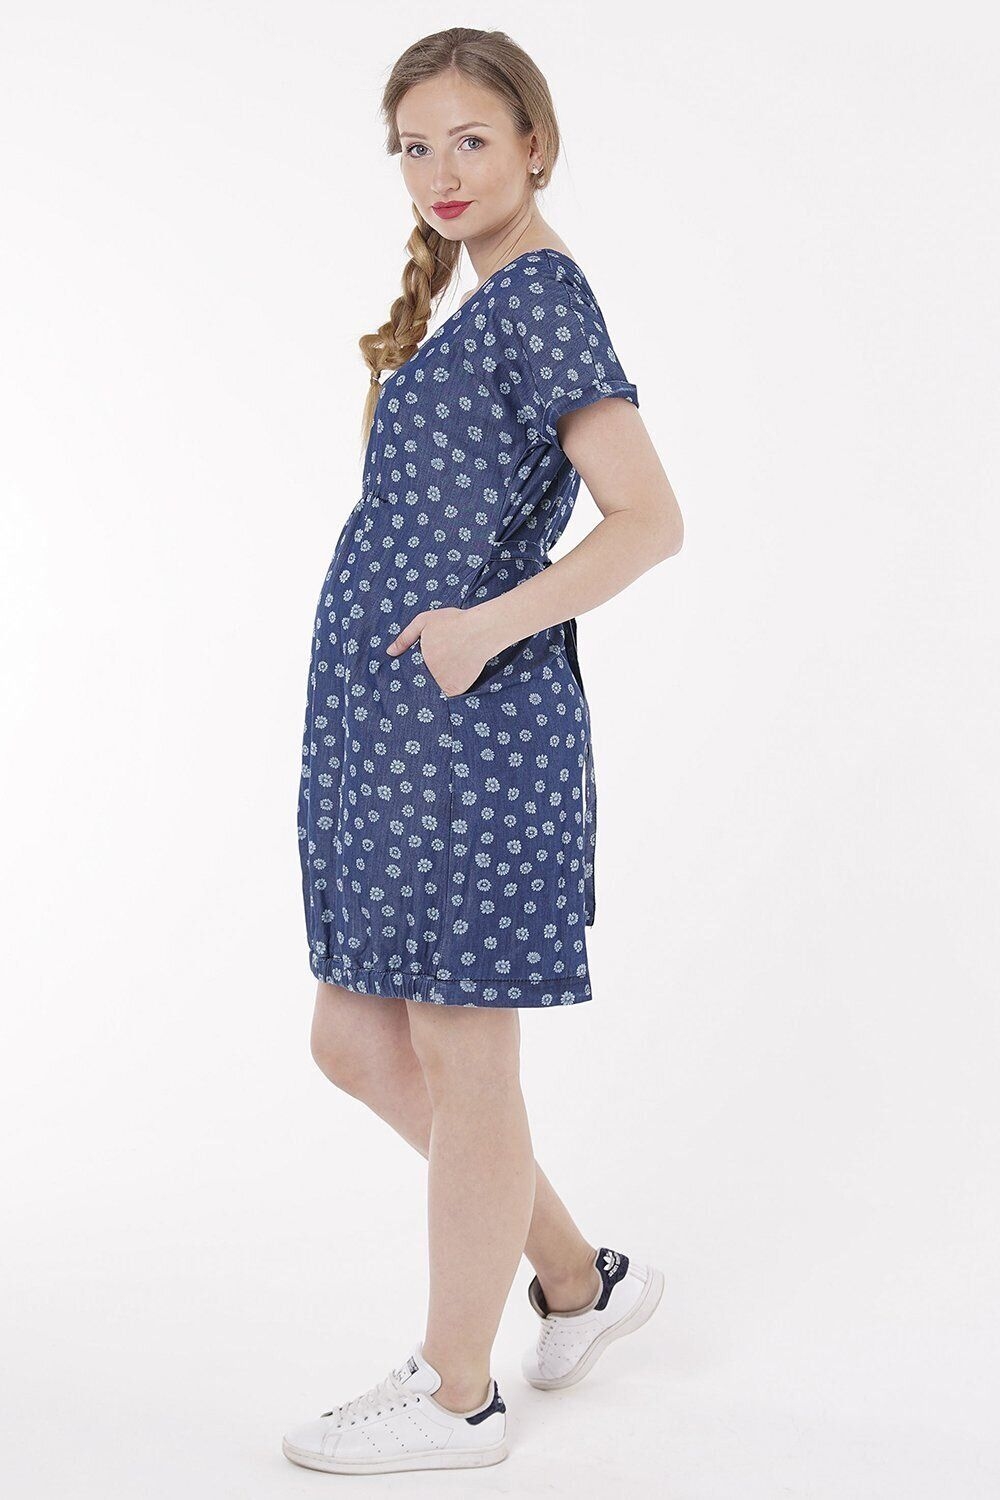 Сукня для вагітних, майбутніх мам Синя варка 0